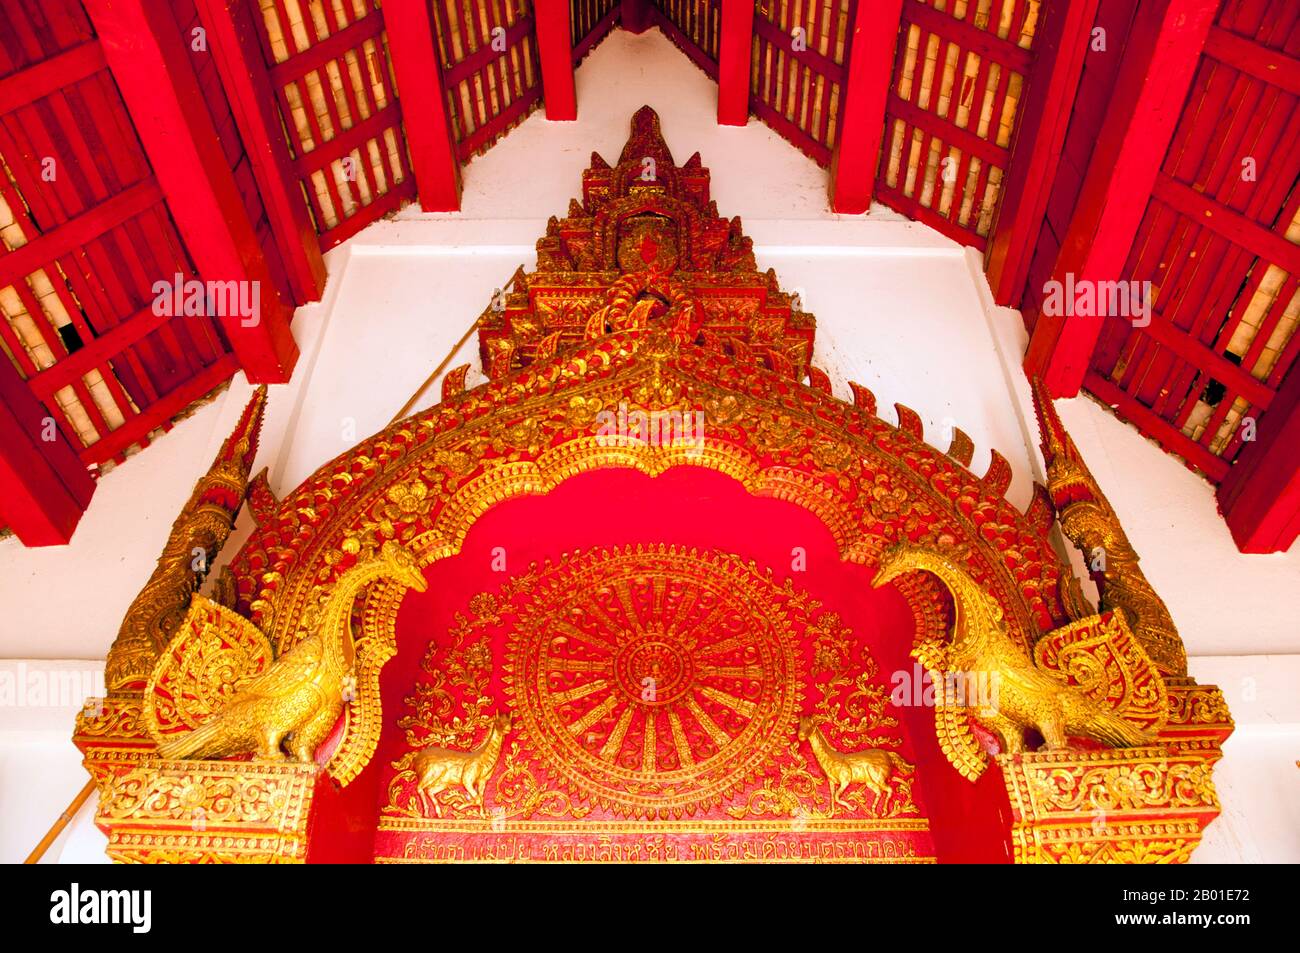 Thaïlande: Fronton de la porte d'entrée avec Dharmachakra (roue de la Loi), le viharn à Wat Phuak Hong, Chiang Mai. Wat Phuak Hong (วัดพวกหงษ์), le 'Temple de la fuite des cygnes', est situé dans le coin sud-ouest de la vieille ville de Chiang Mai. Un petit temple typique de LAN Na, il est surtout remarquable pour la stupa ronde qui se dresse à l'ouest du viharn. Construit au 16th siècle, la structure arrondie a sept niveaux décroissants encerclés par un total de 52 niches pour les images du Bouddha, dont certains survivent aujourd'hui, bien que dans un état plutôt endommagé. Banque D'Images